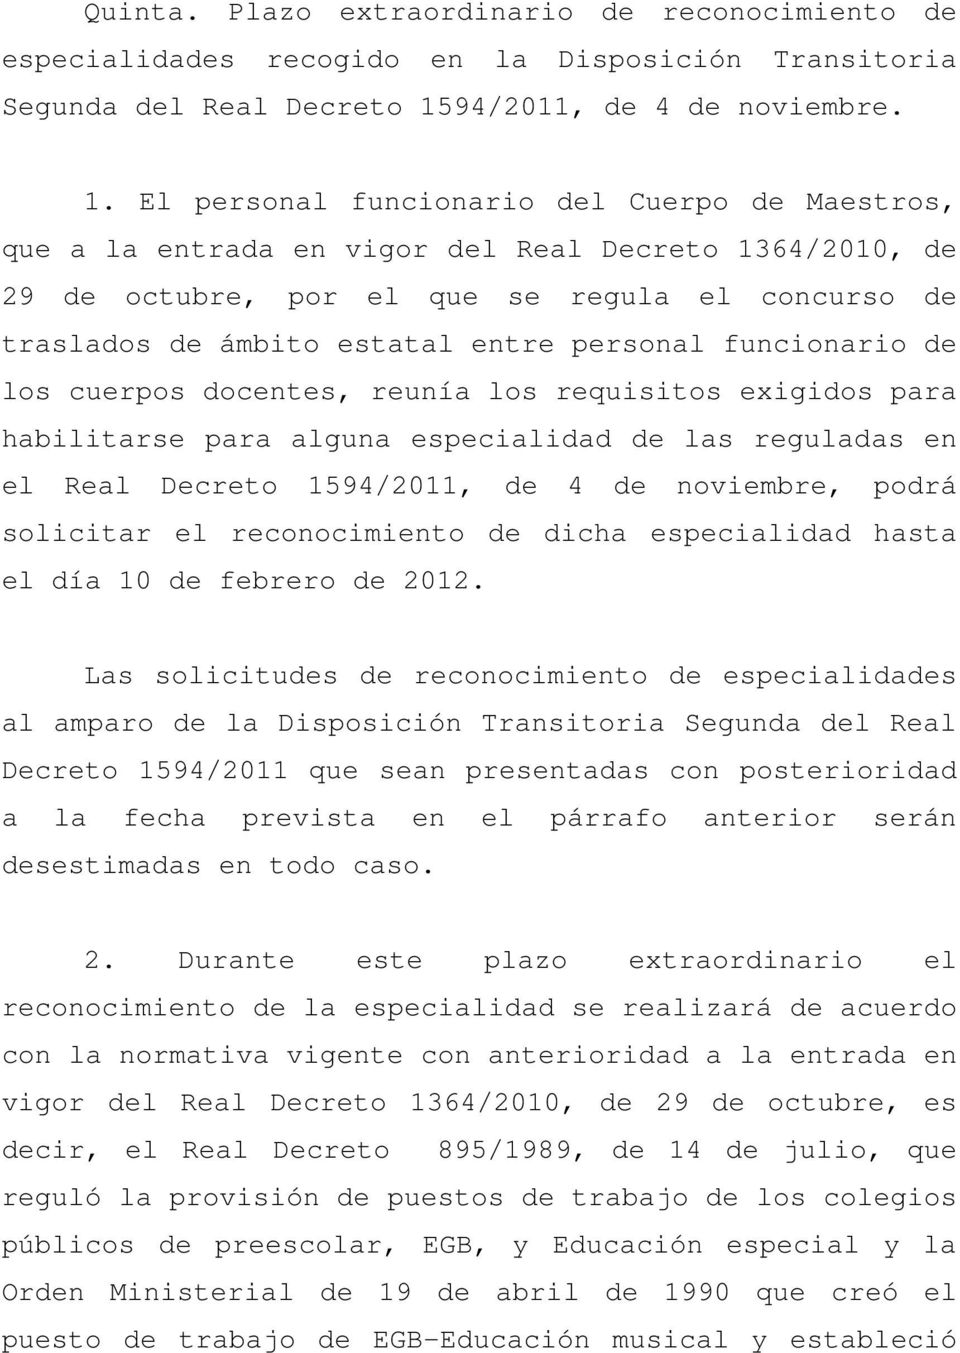 El personal funcionario del Cuerpo de Maestros, que a la entrada en vigor del Real Decreto 1364/2010, de 29 de octubre, por el que se regula el concurso de traslados de ámbito estatal entre personal